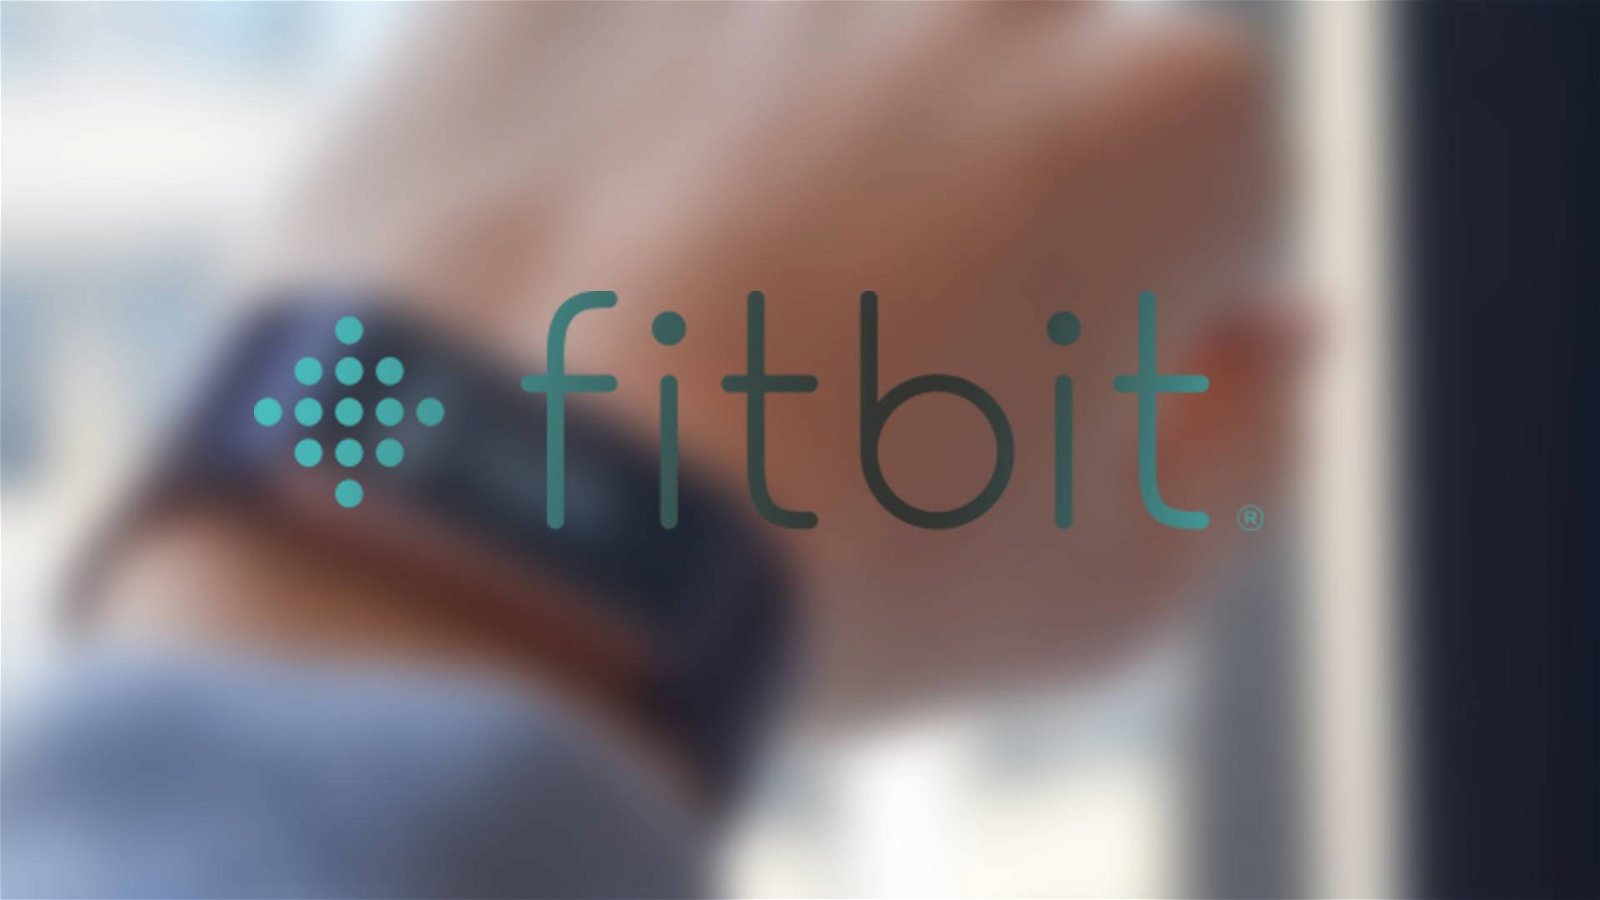 Immagine di Fitbit Heart Study, uno studio per valutare la fibrillazione atriale sui suoi dispositivi